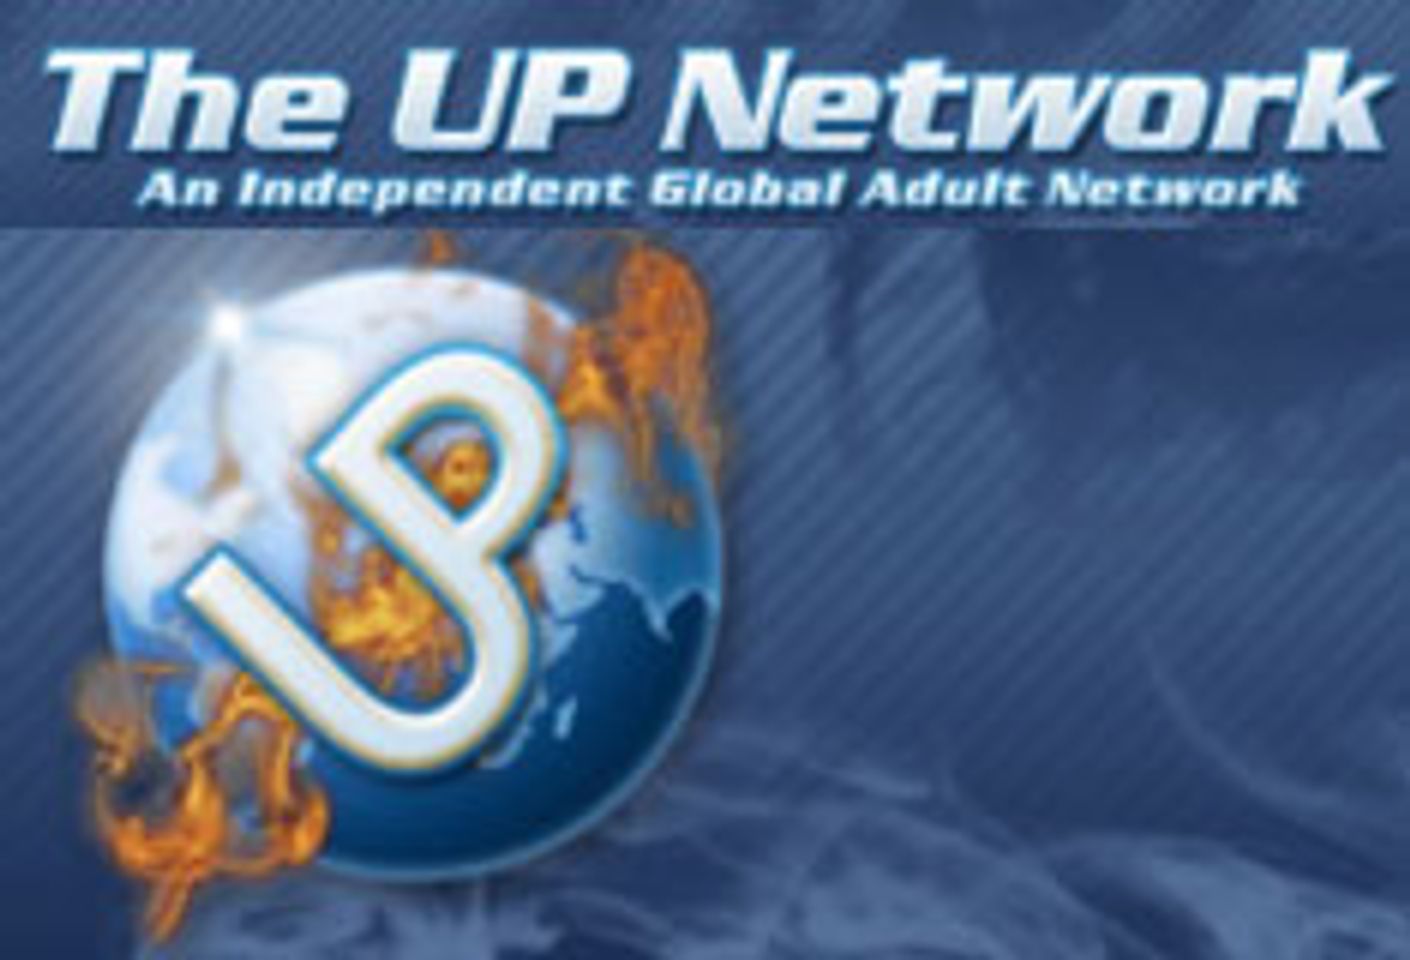 UP Network Websites, Models Up for 7 Tranny Awards